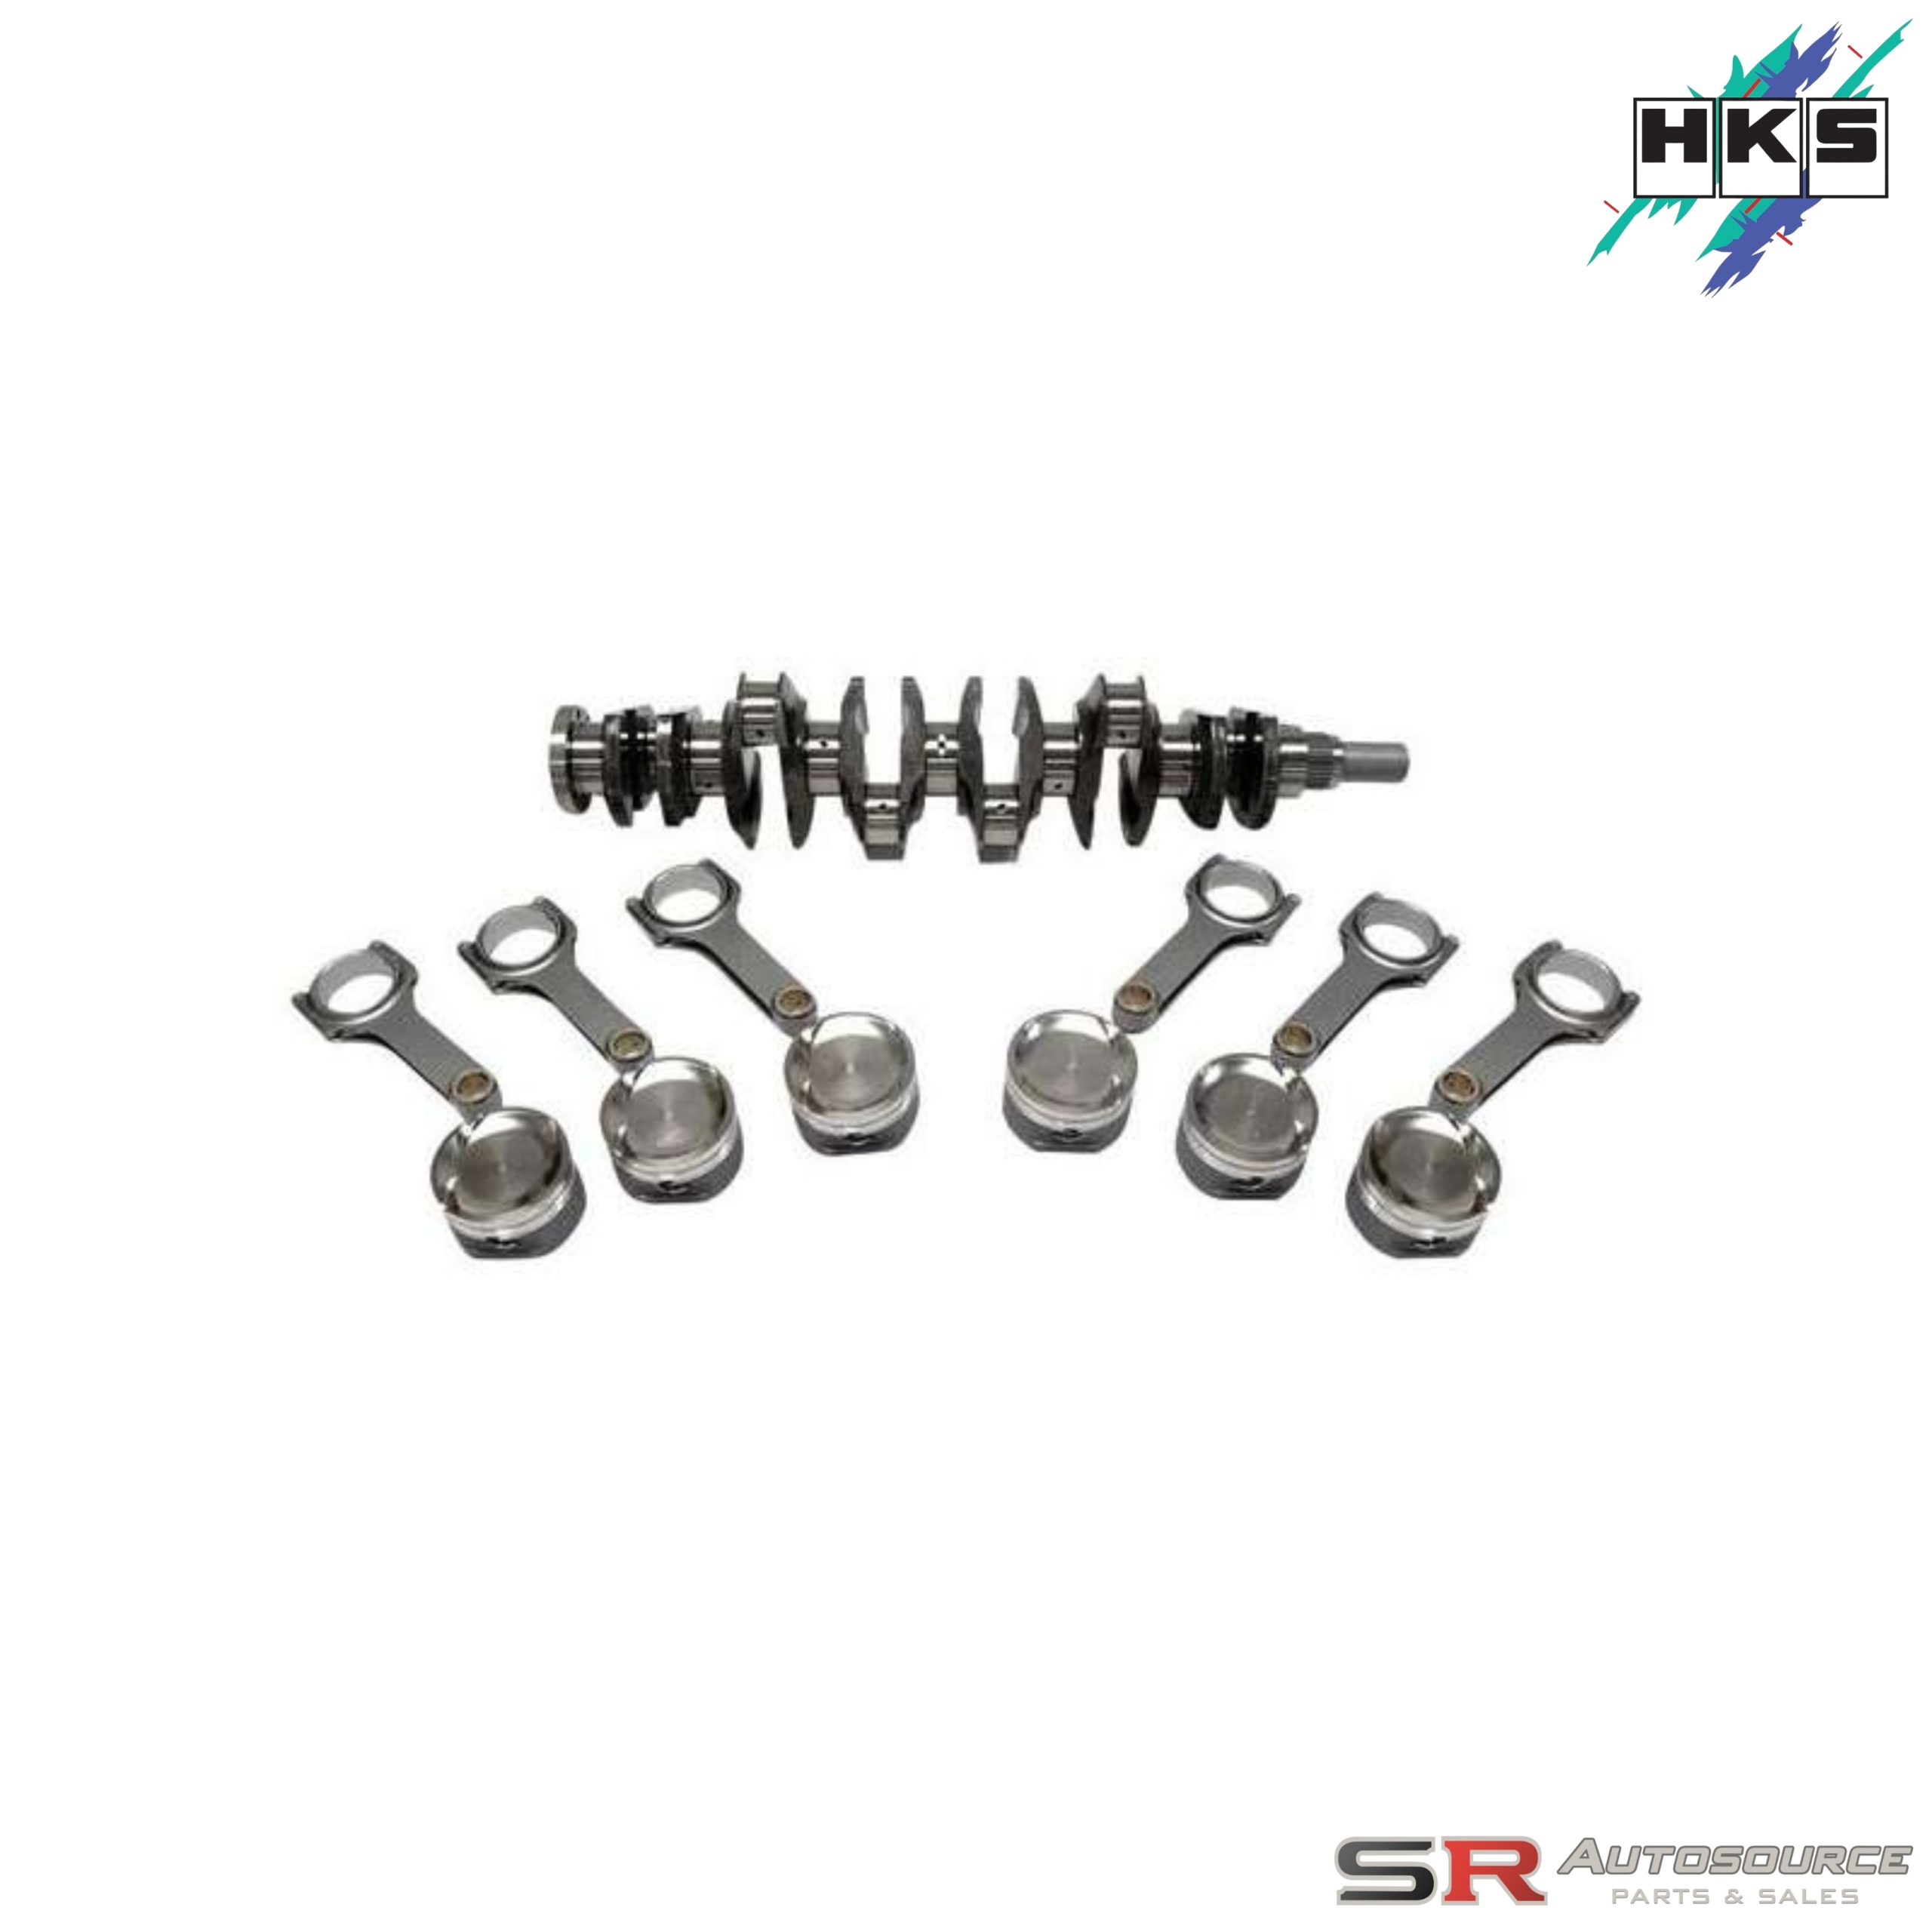 HKS 2.8 Stroker Kits for RB26DETT